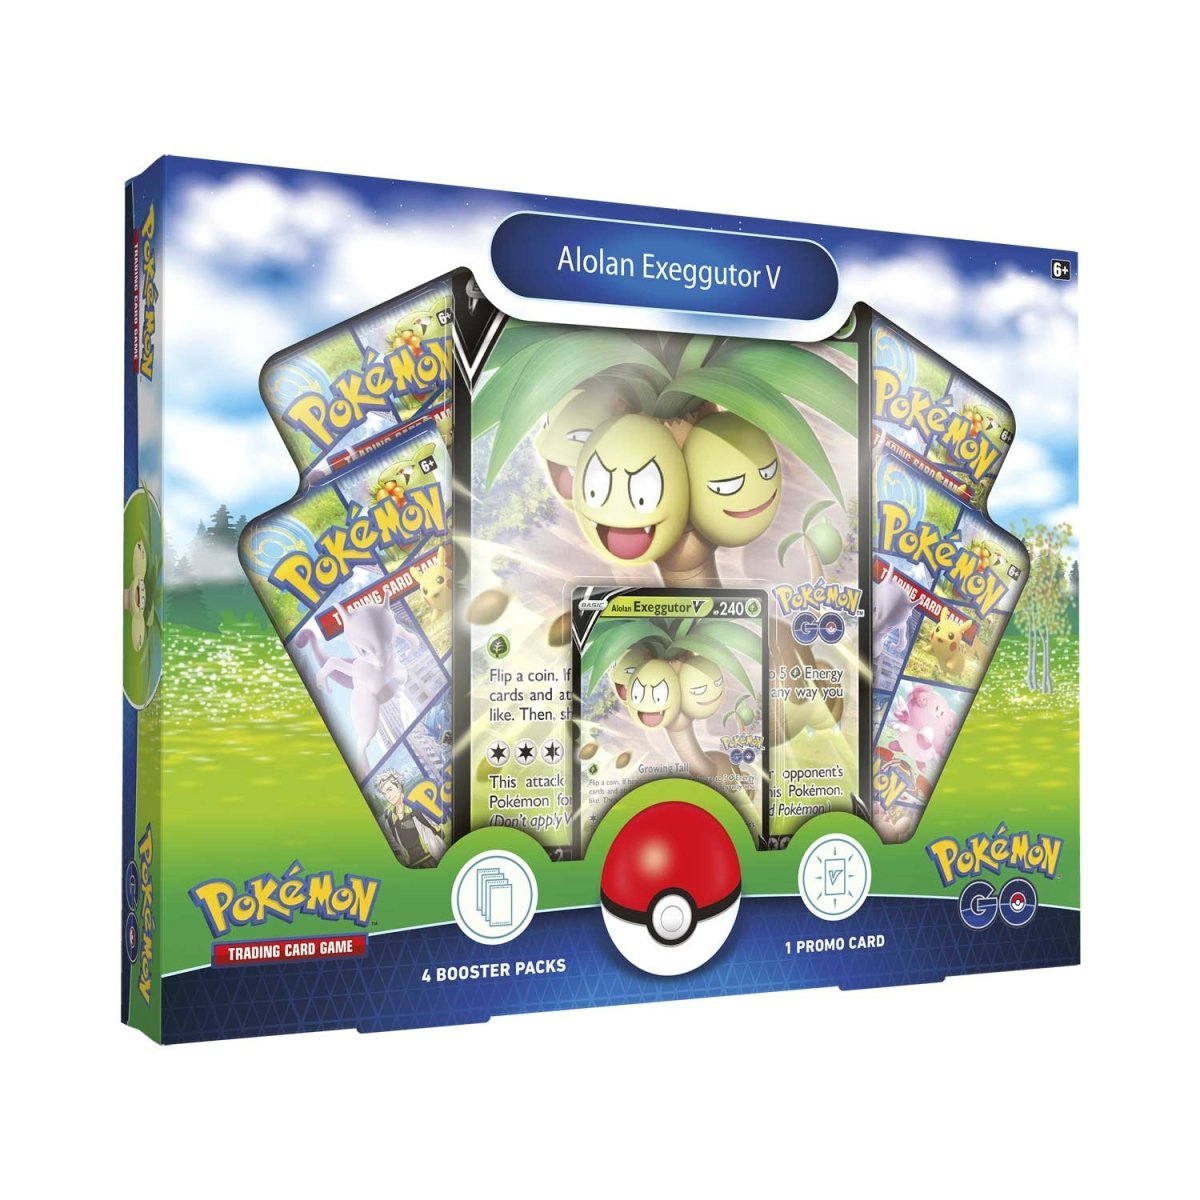 Pokémon TCG: Pokémon GO Collection Box - Alolan Exeggutor V - PokeRvmCollection Box